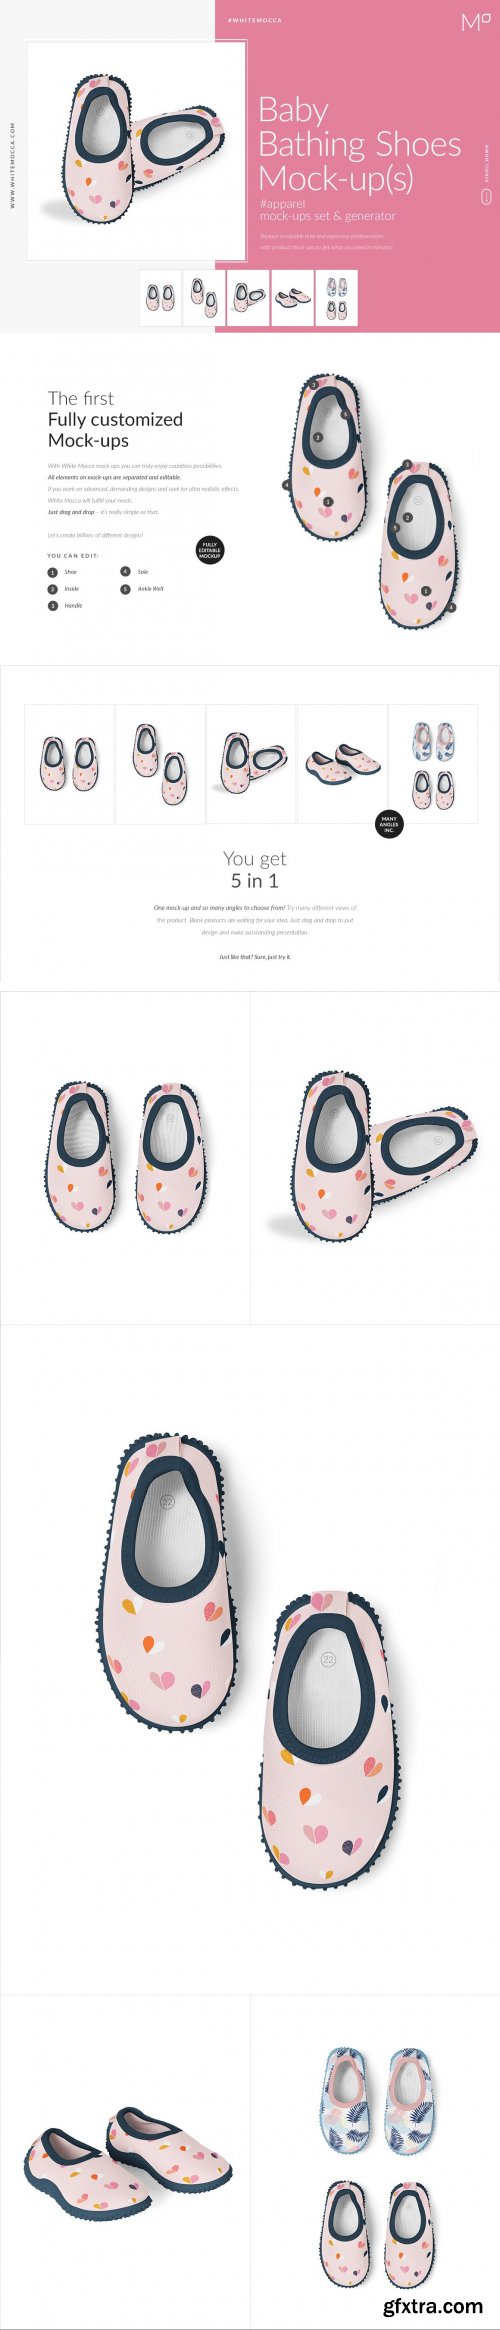 CreativeMarket - Baby Bathing Shoes Mock ups Set 4523604 